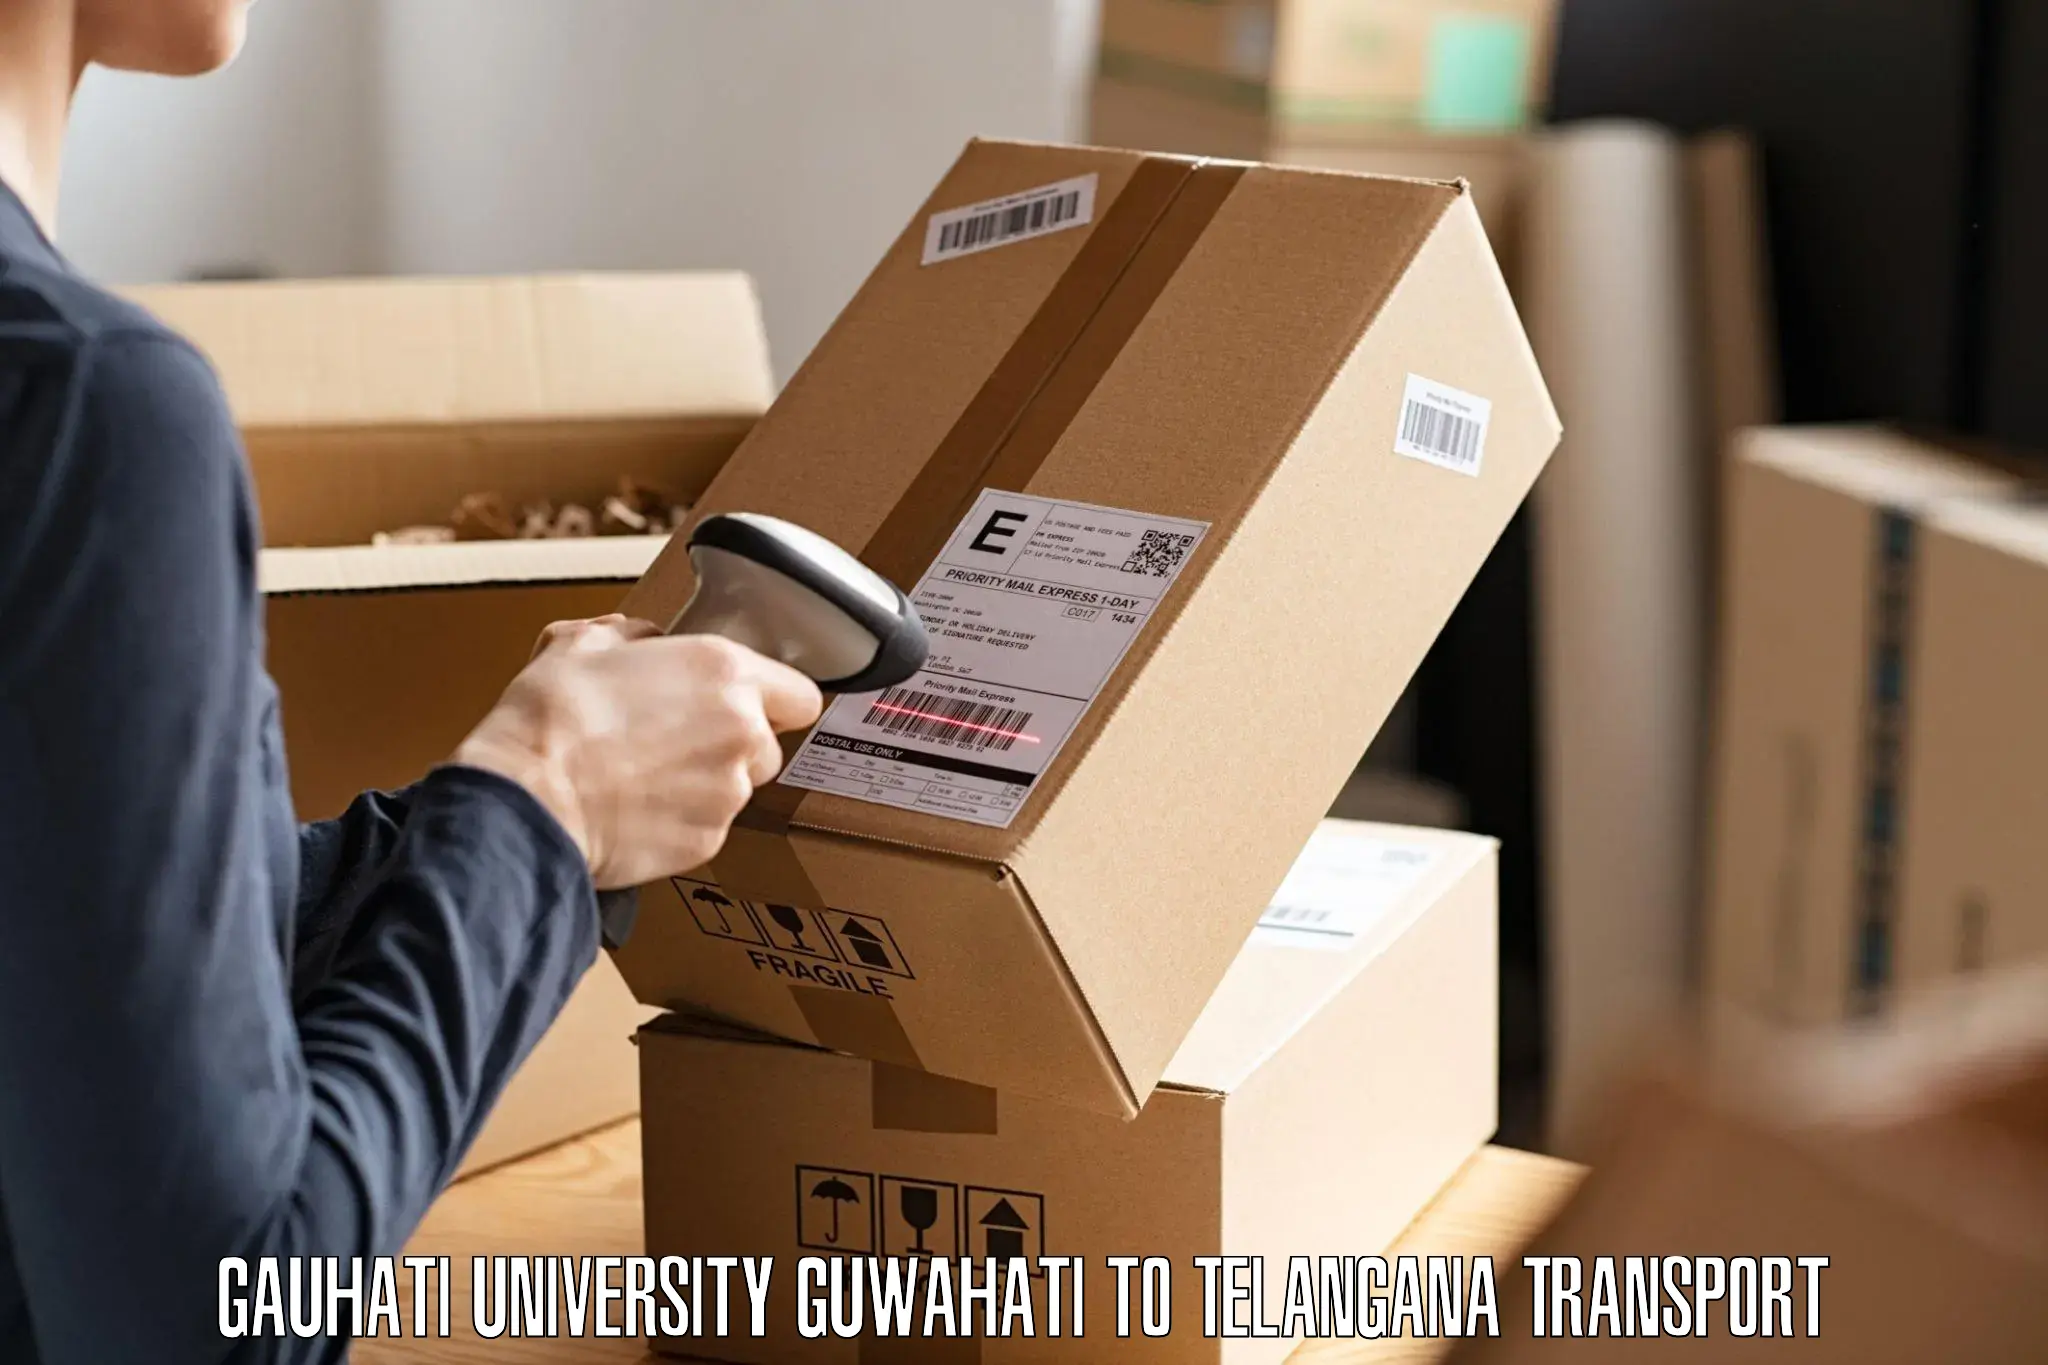 Online transport Gauhati University Guwahati to Nirmal